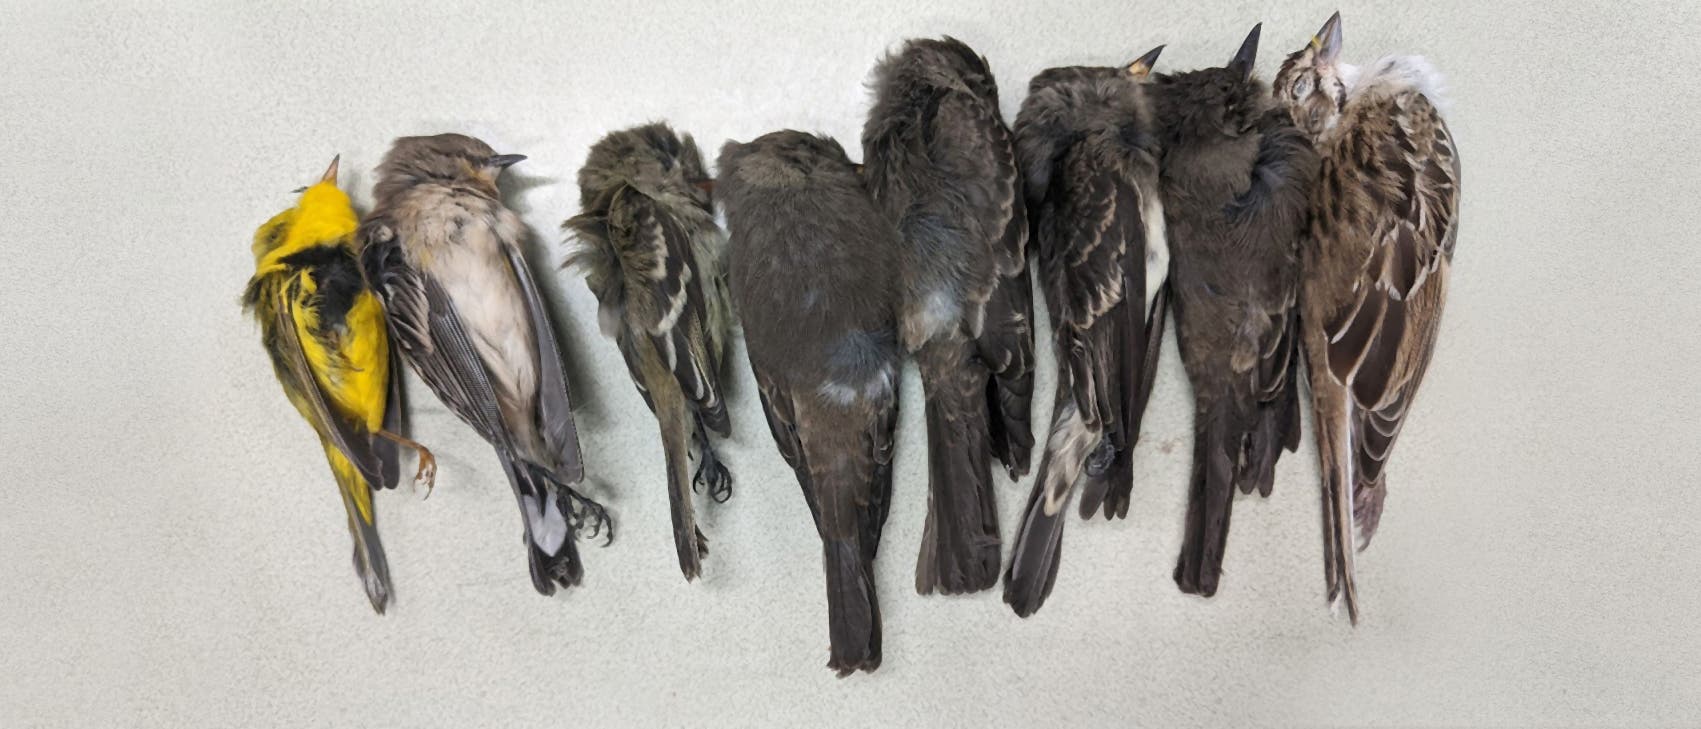 Hunderttausende tote Zugvögel in New Mexico und dem Südwesten der USA